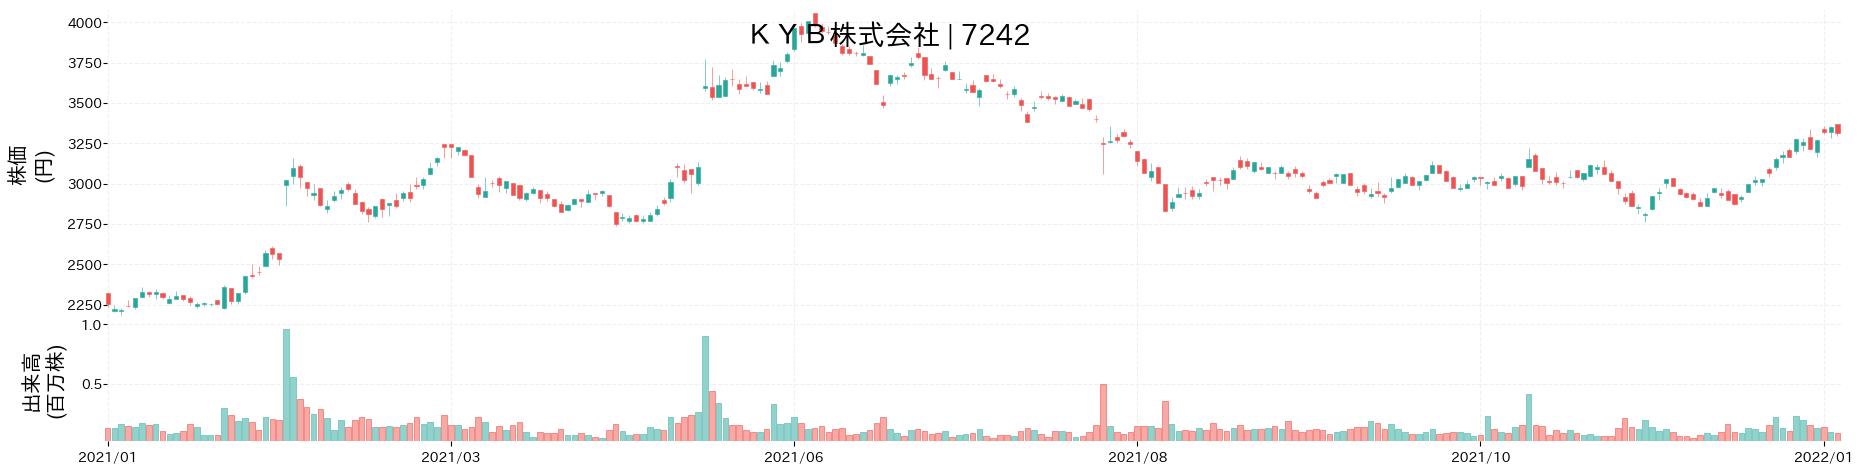 KYBの株価推移(2021)